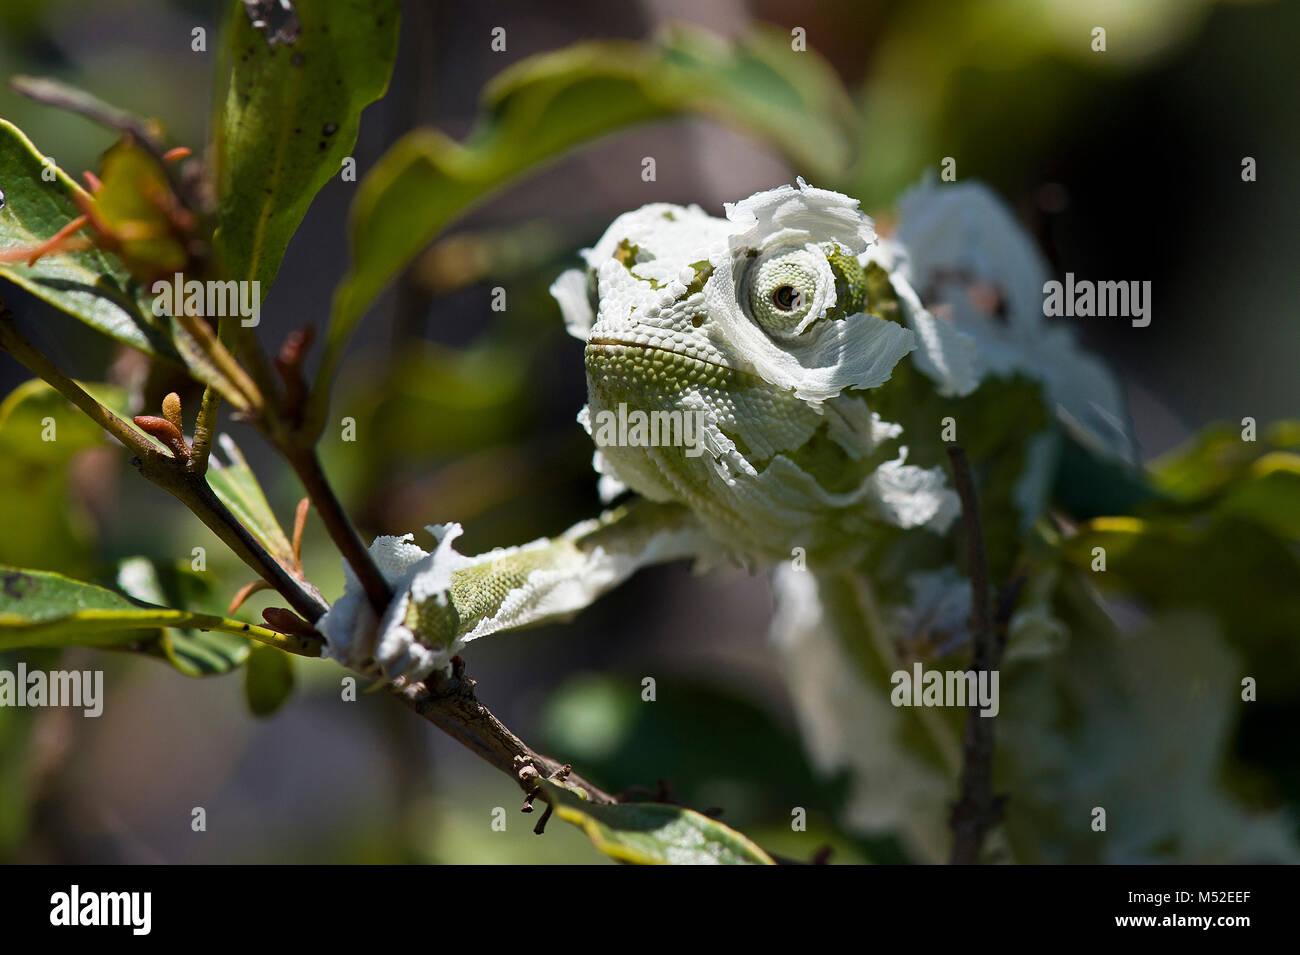 Flap-necked chameleon shedding its skin. Stock Photo